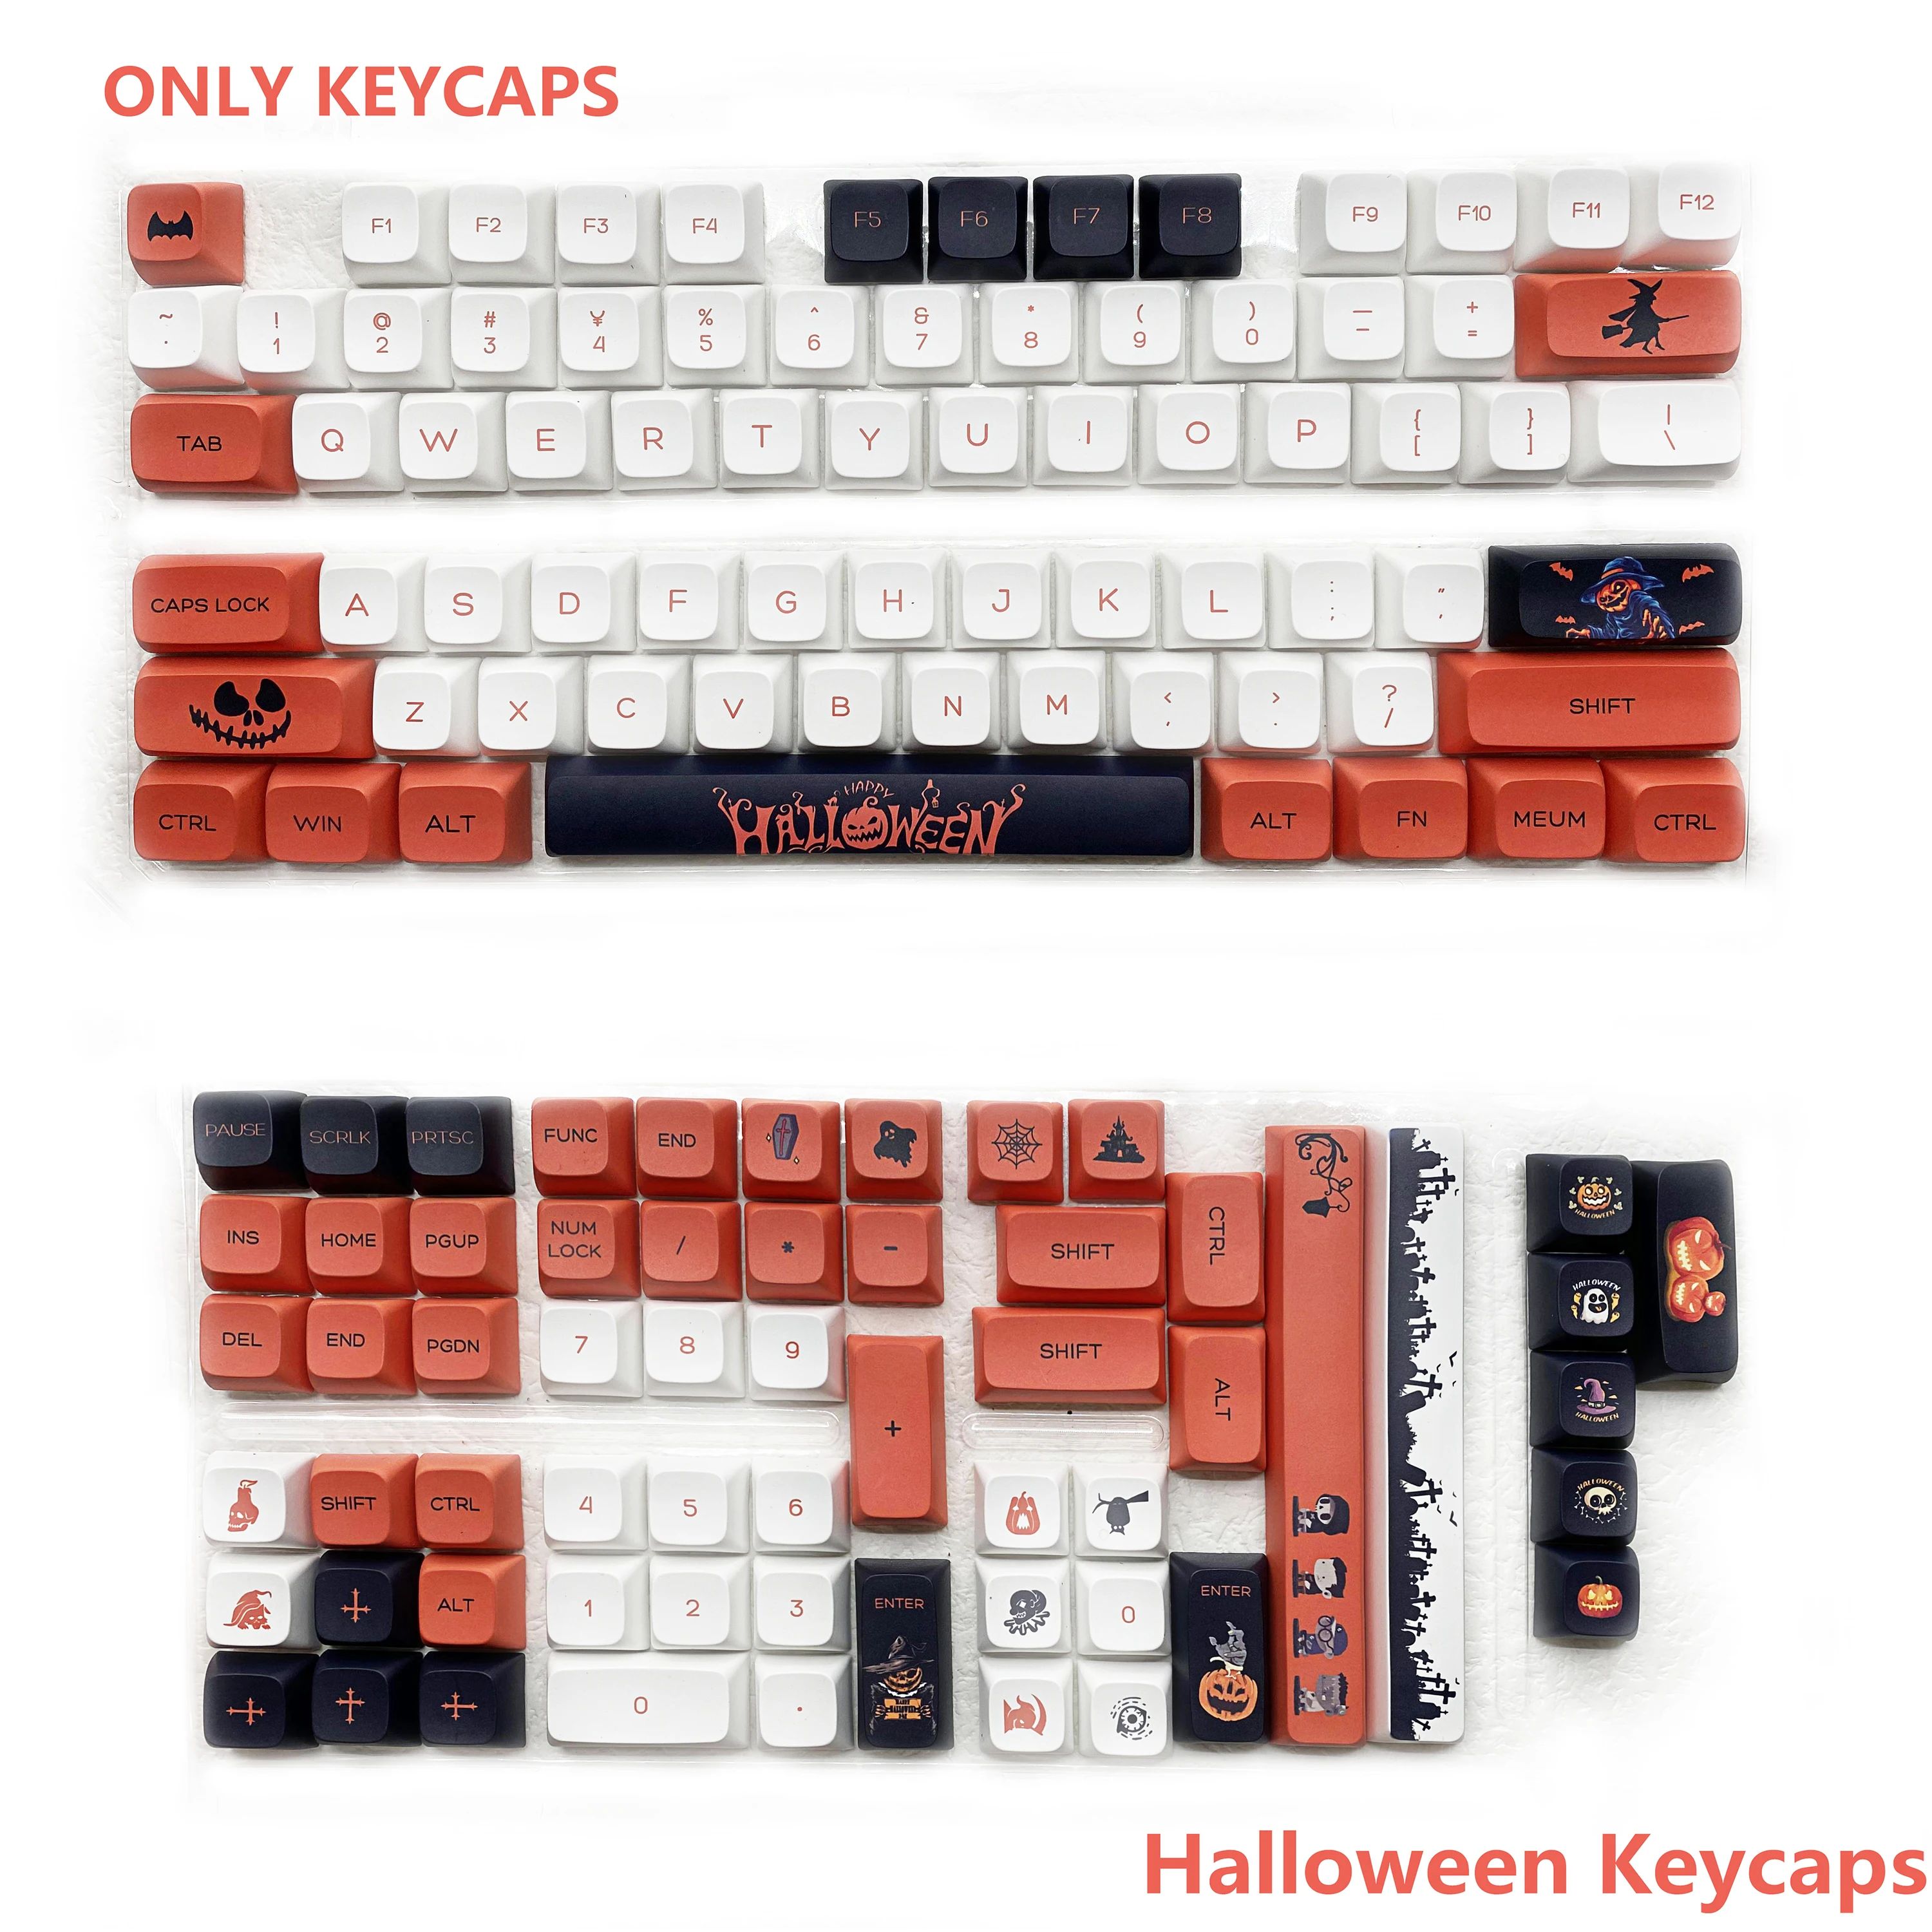 Cor: Halloween Keycaps